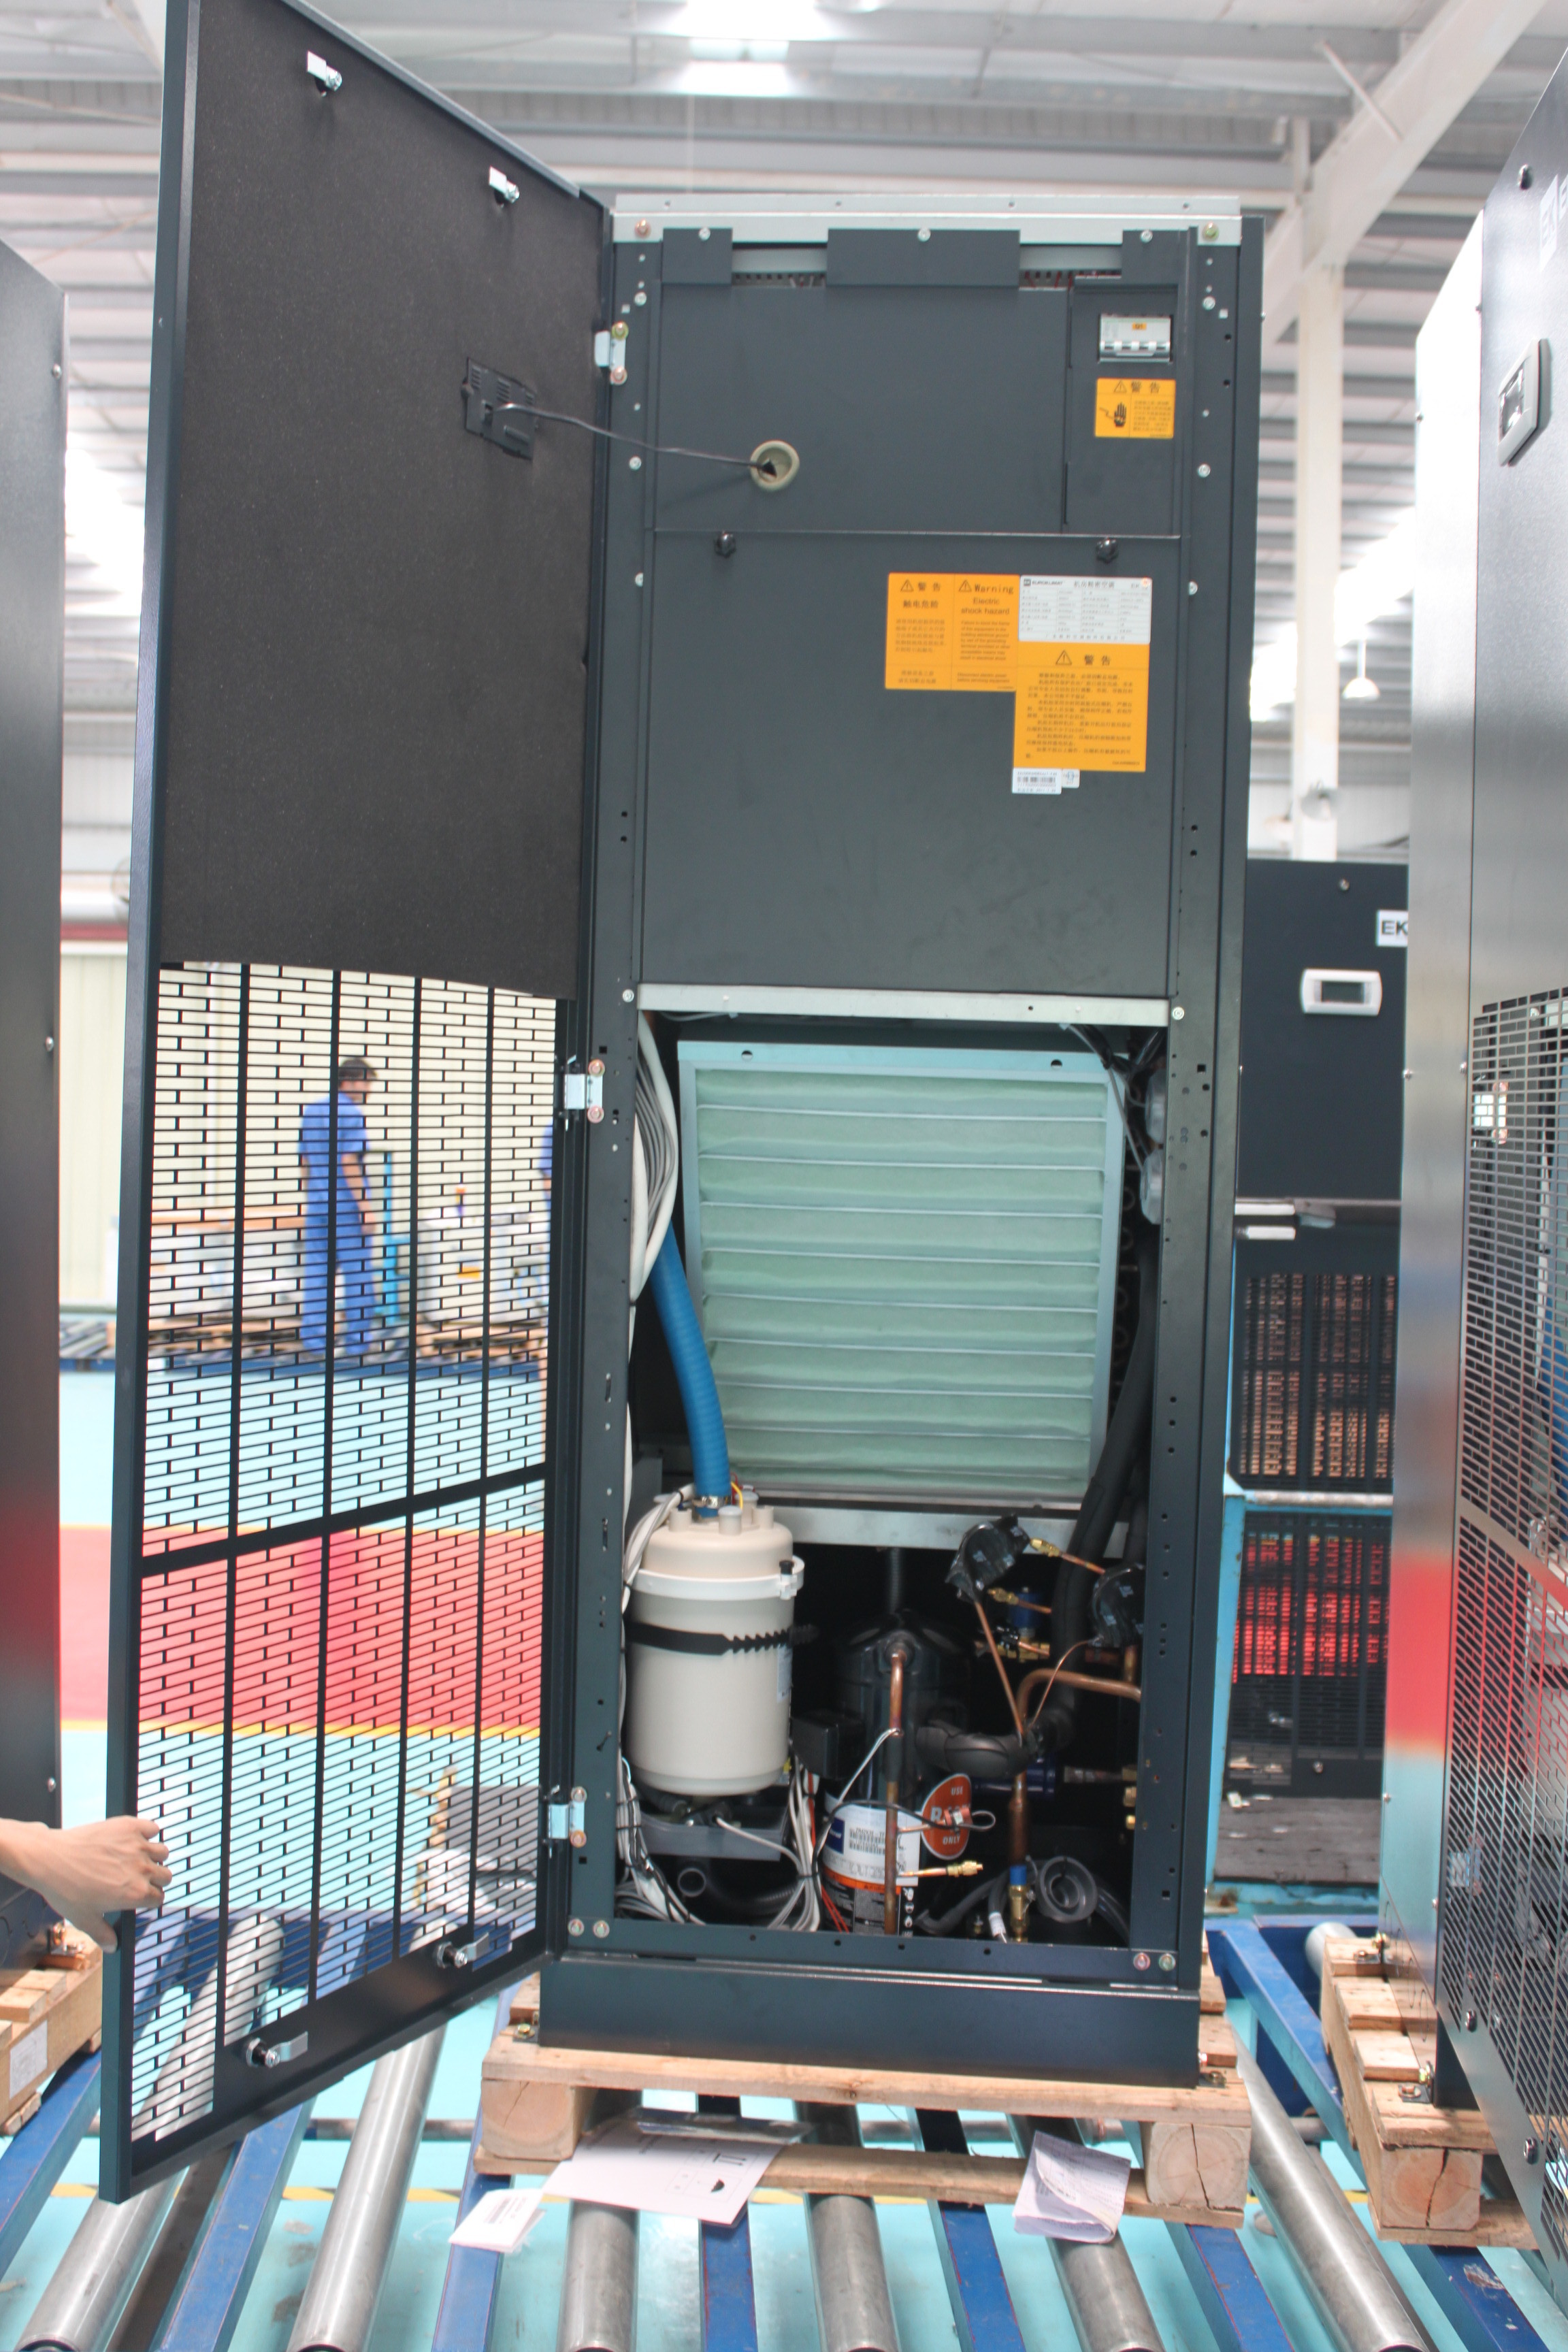 Máy điều hòa không khí chính xác làm mát bằng nước công nghiệp 34,9KW cho phòng máy chủ